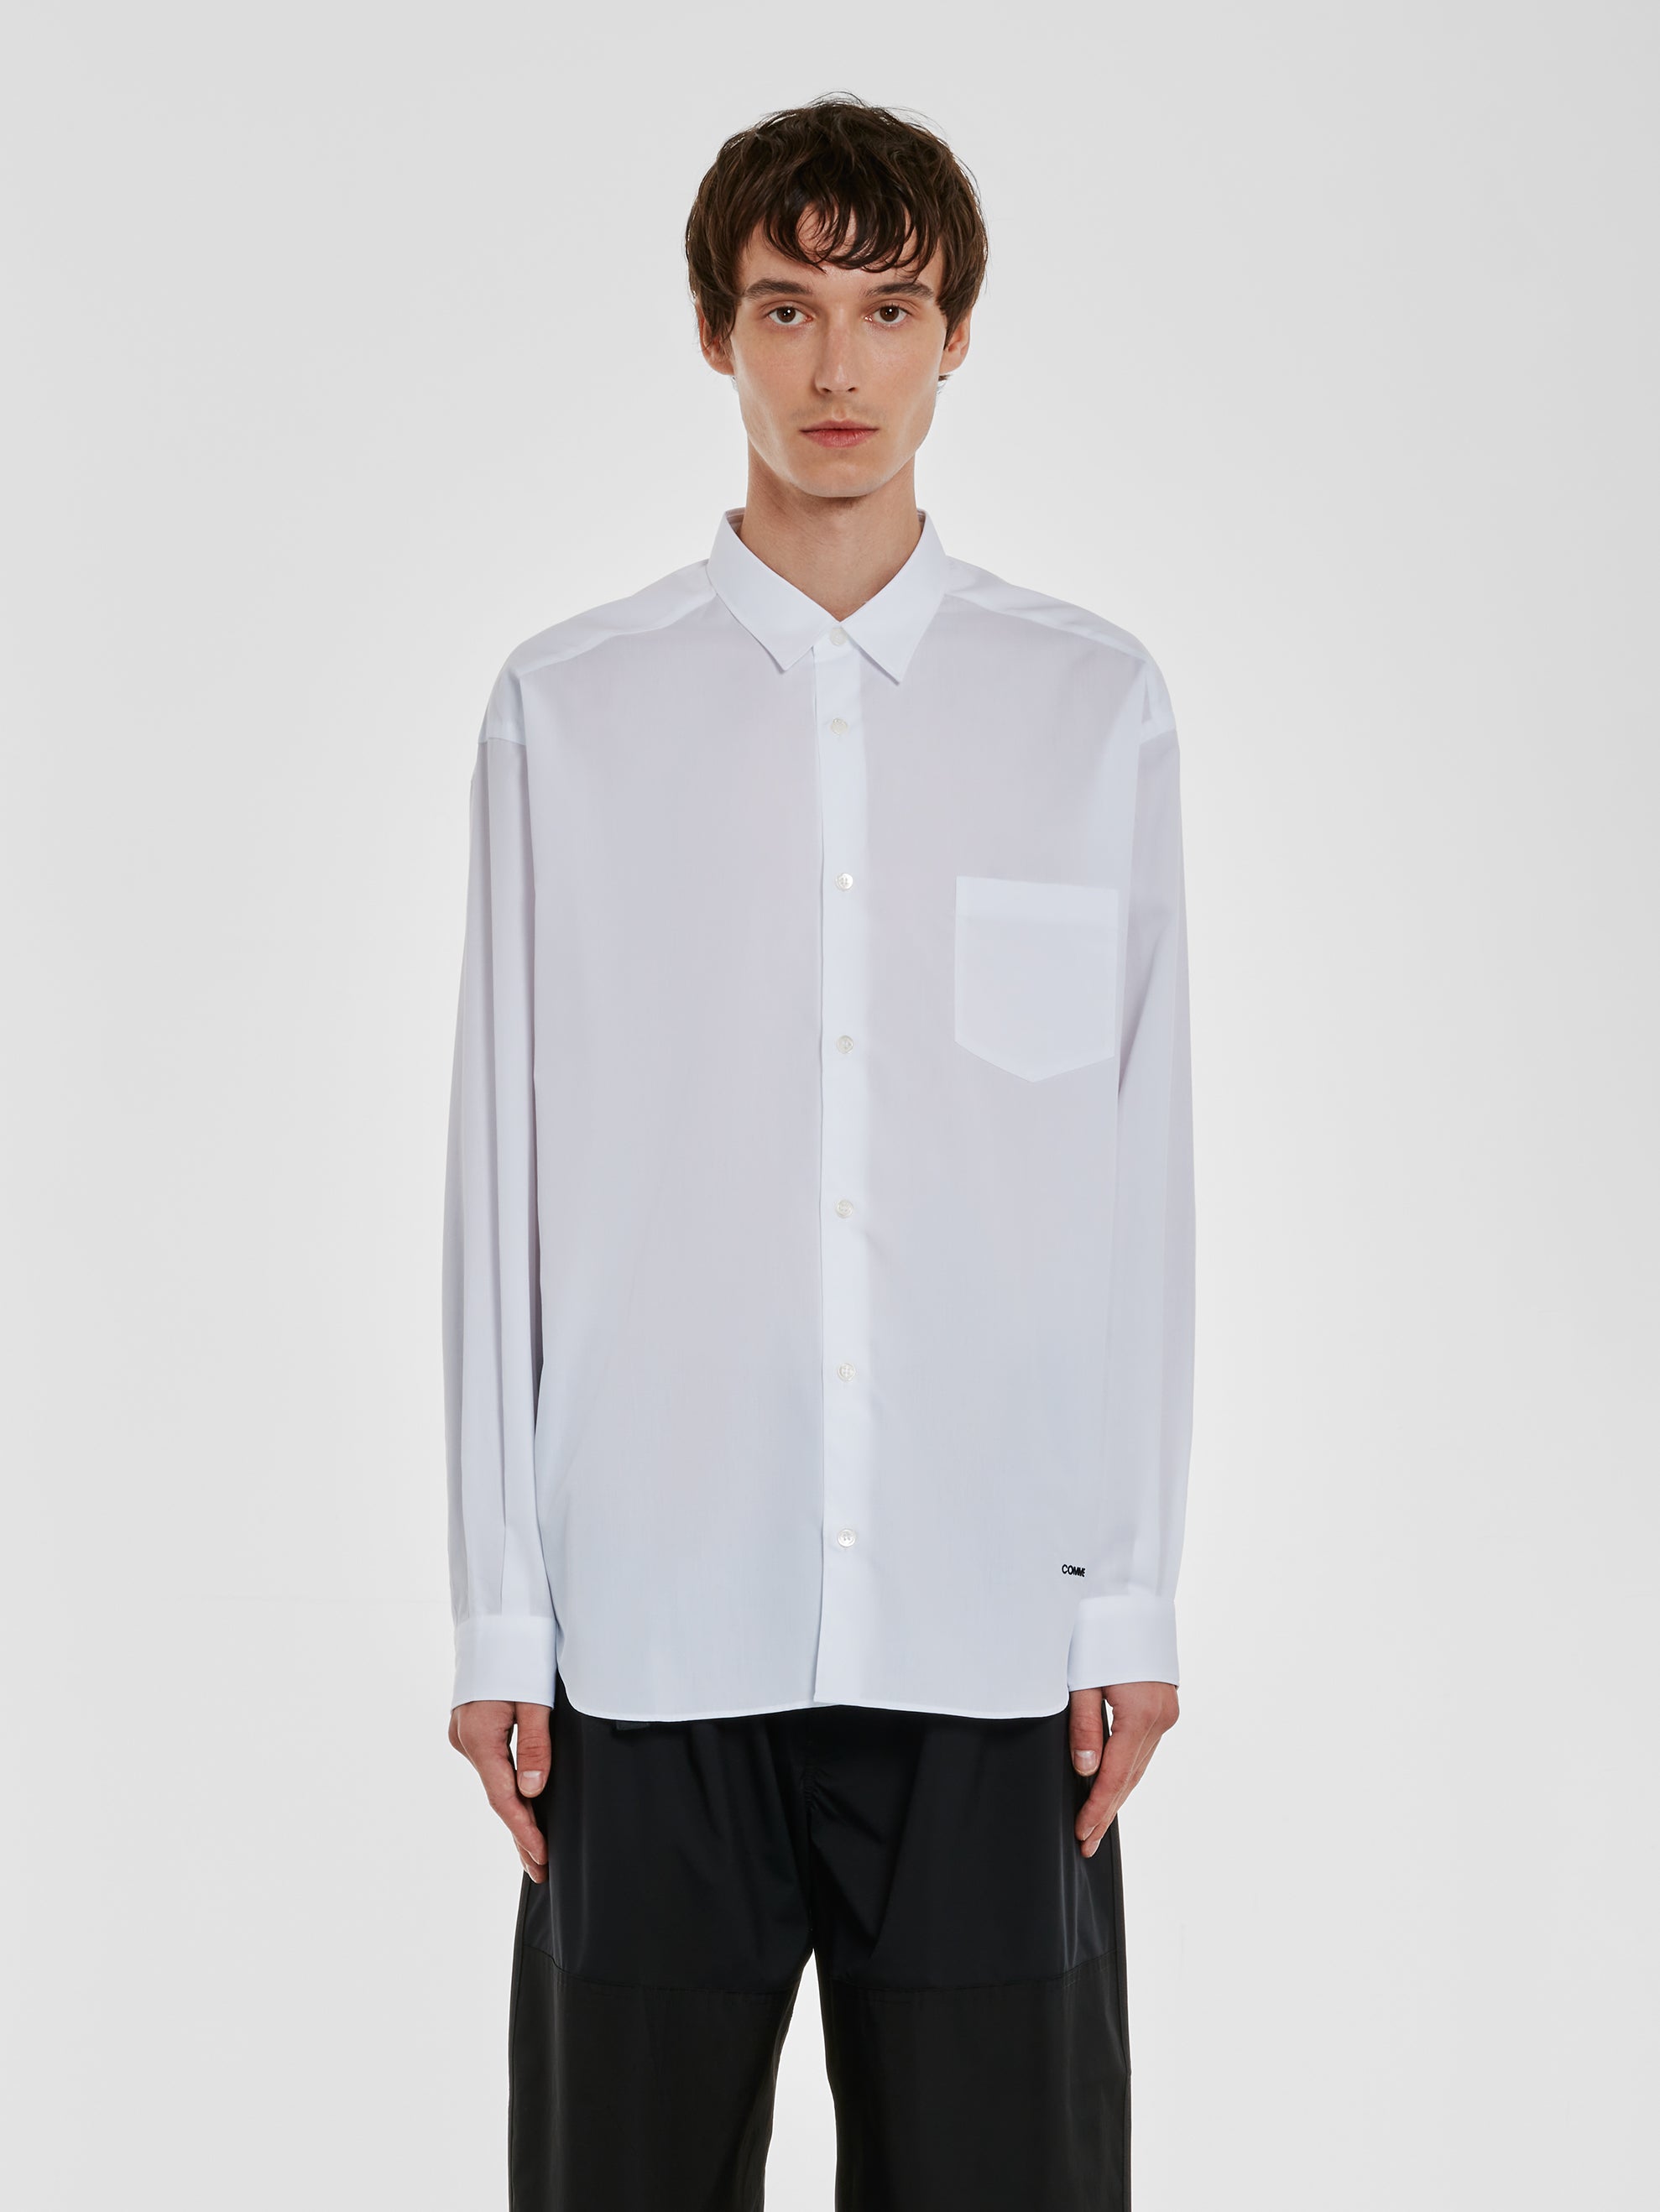 Comme des Garçons Homme - Men’s Cotton Shirt - (White) view 1